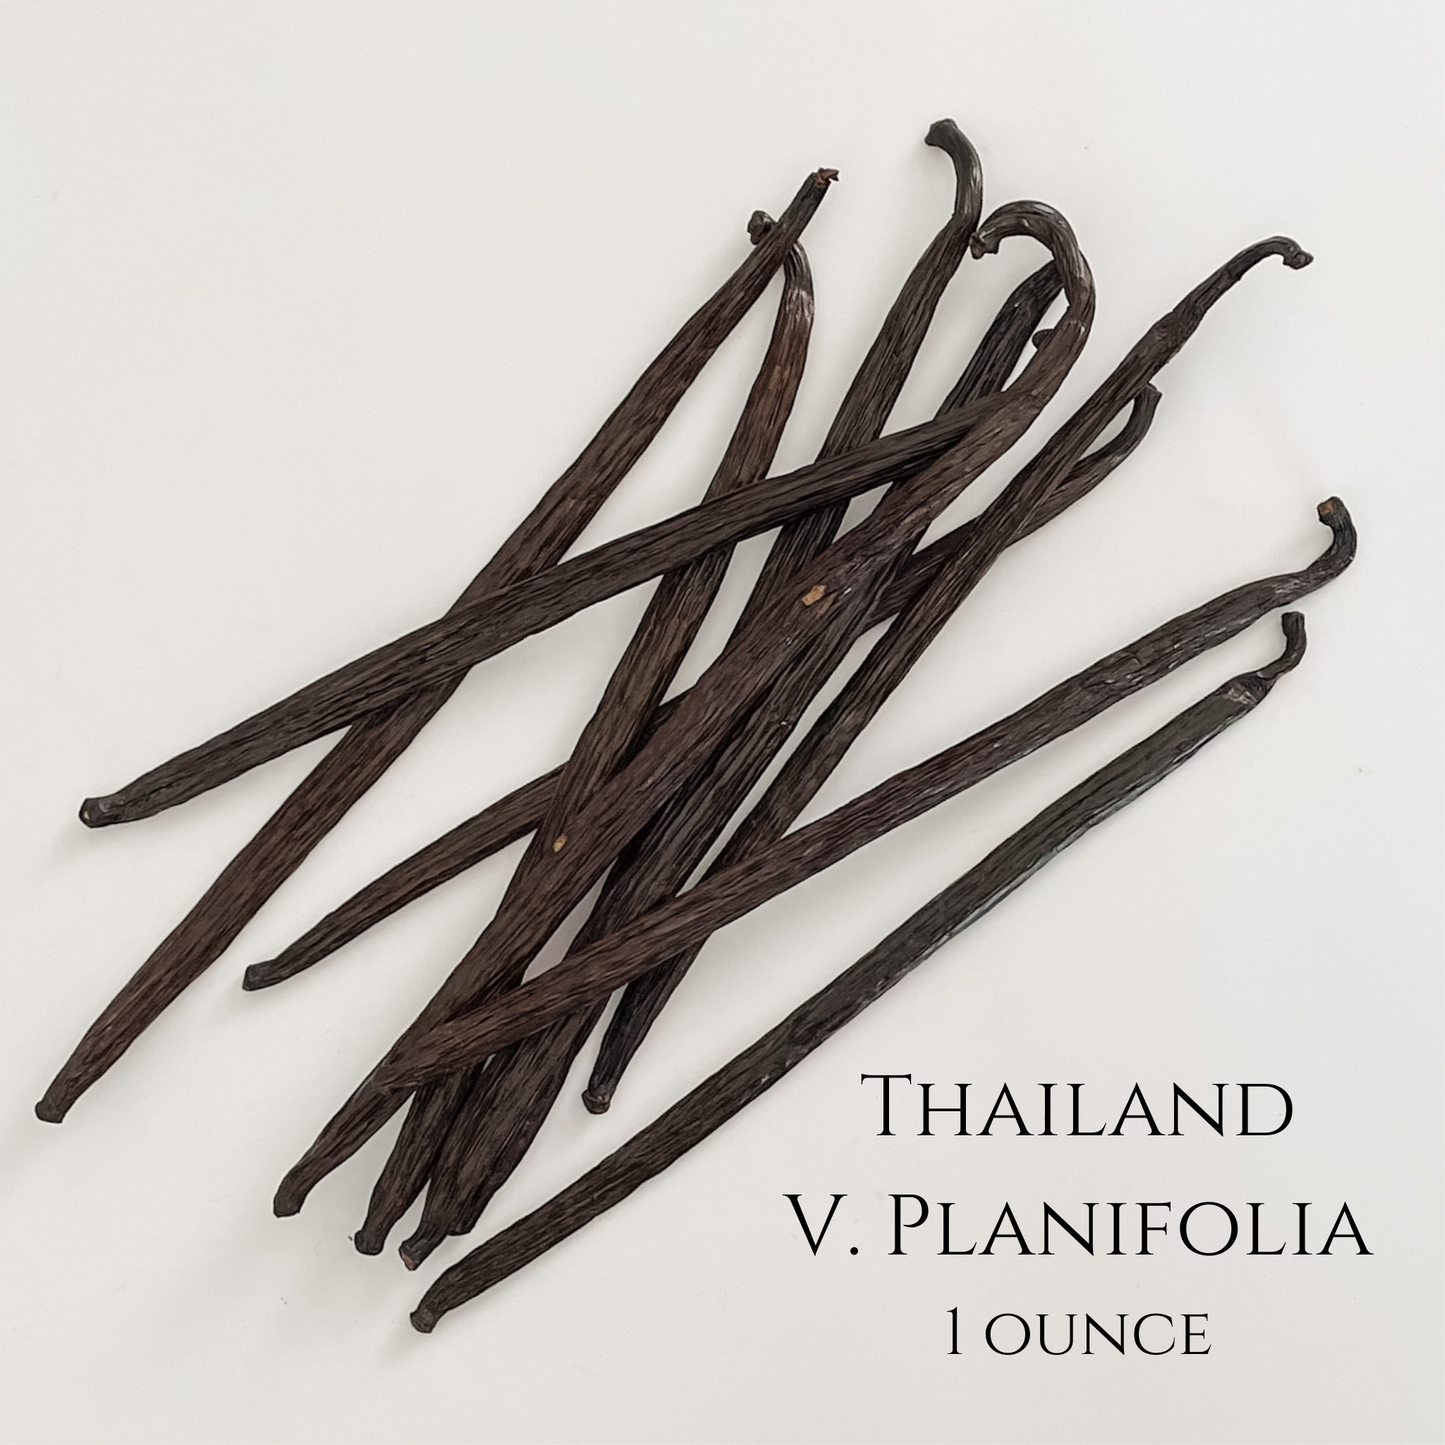 Thailand V. planifolia Vanilla Beans